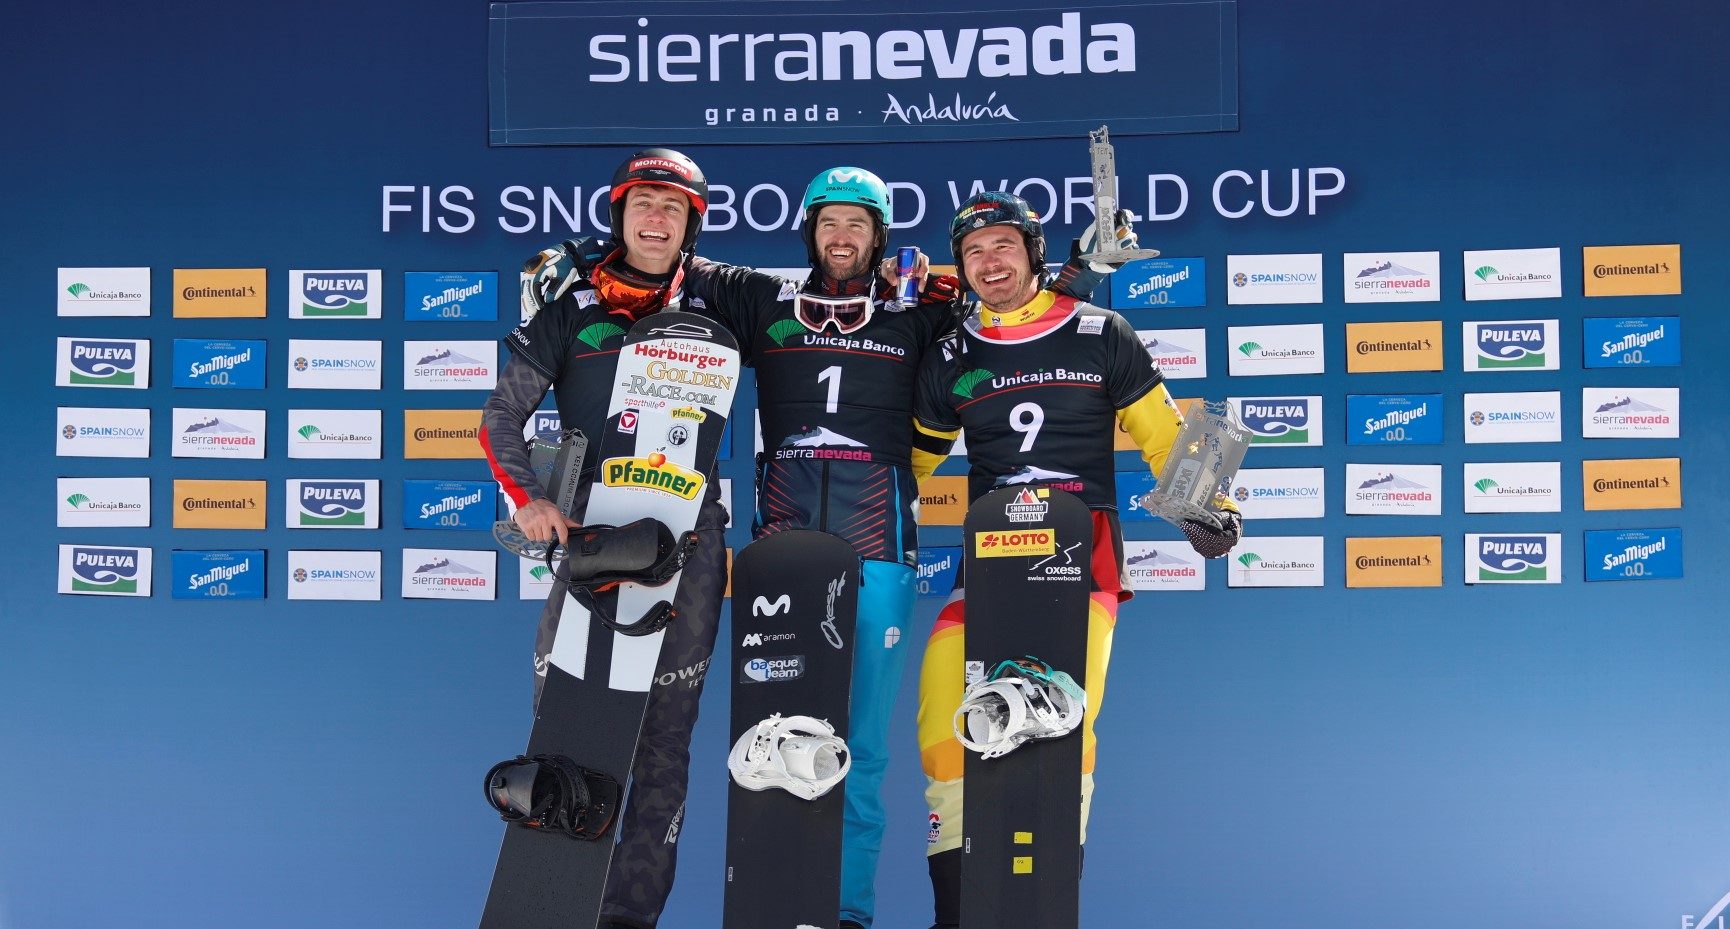 Lucas Eguibar domina, de principio a fin, la Copa del Mundo snowboardcross de Sierra Nevada